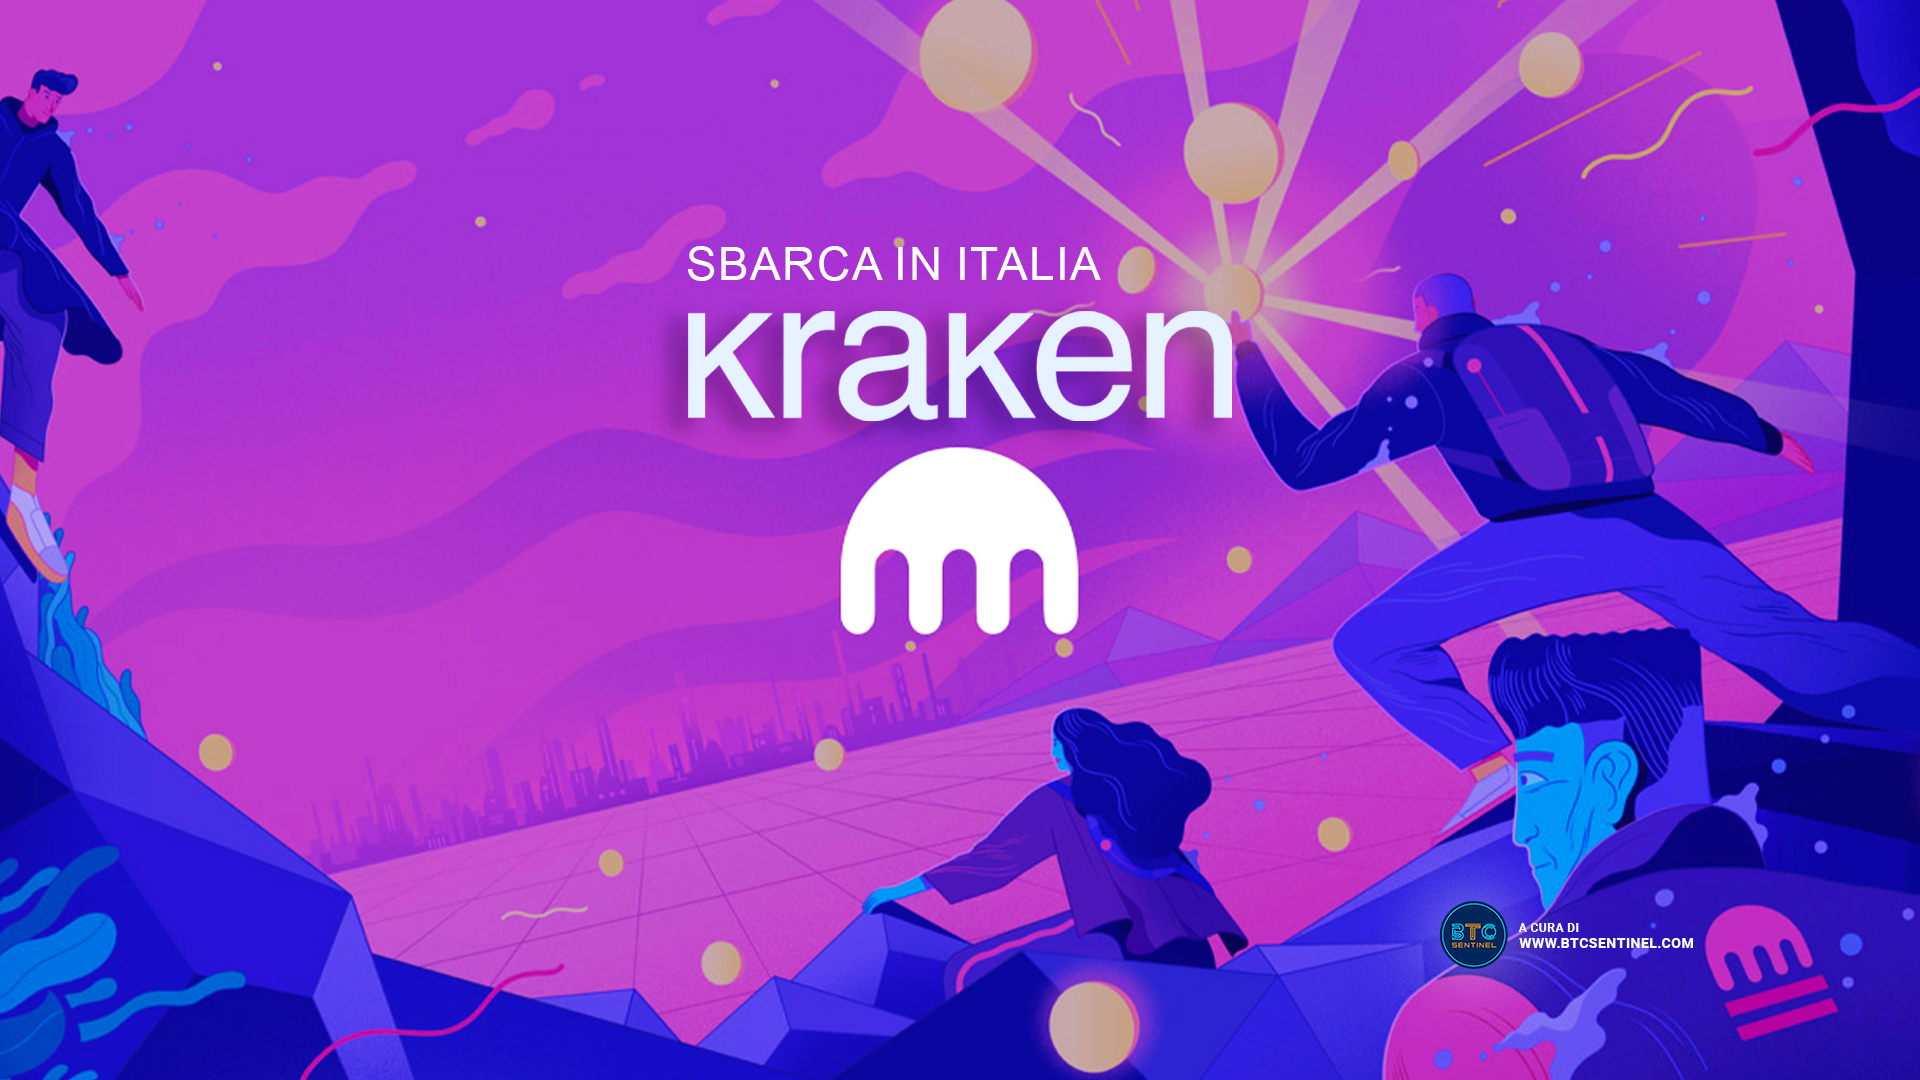 L’exchange di criptovalute Kraken ottiene la licenza in Italia